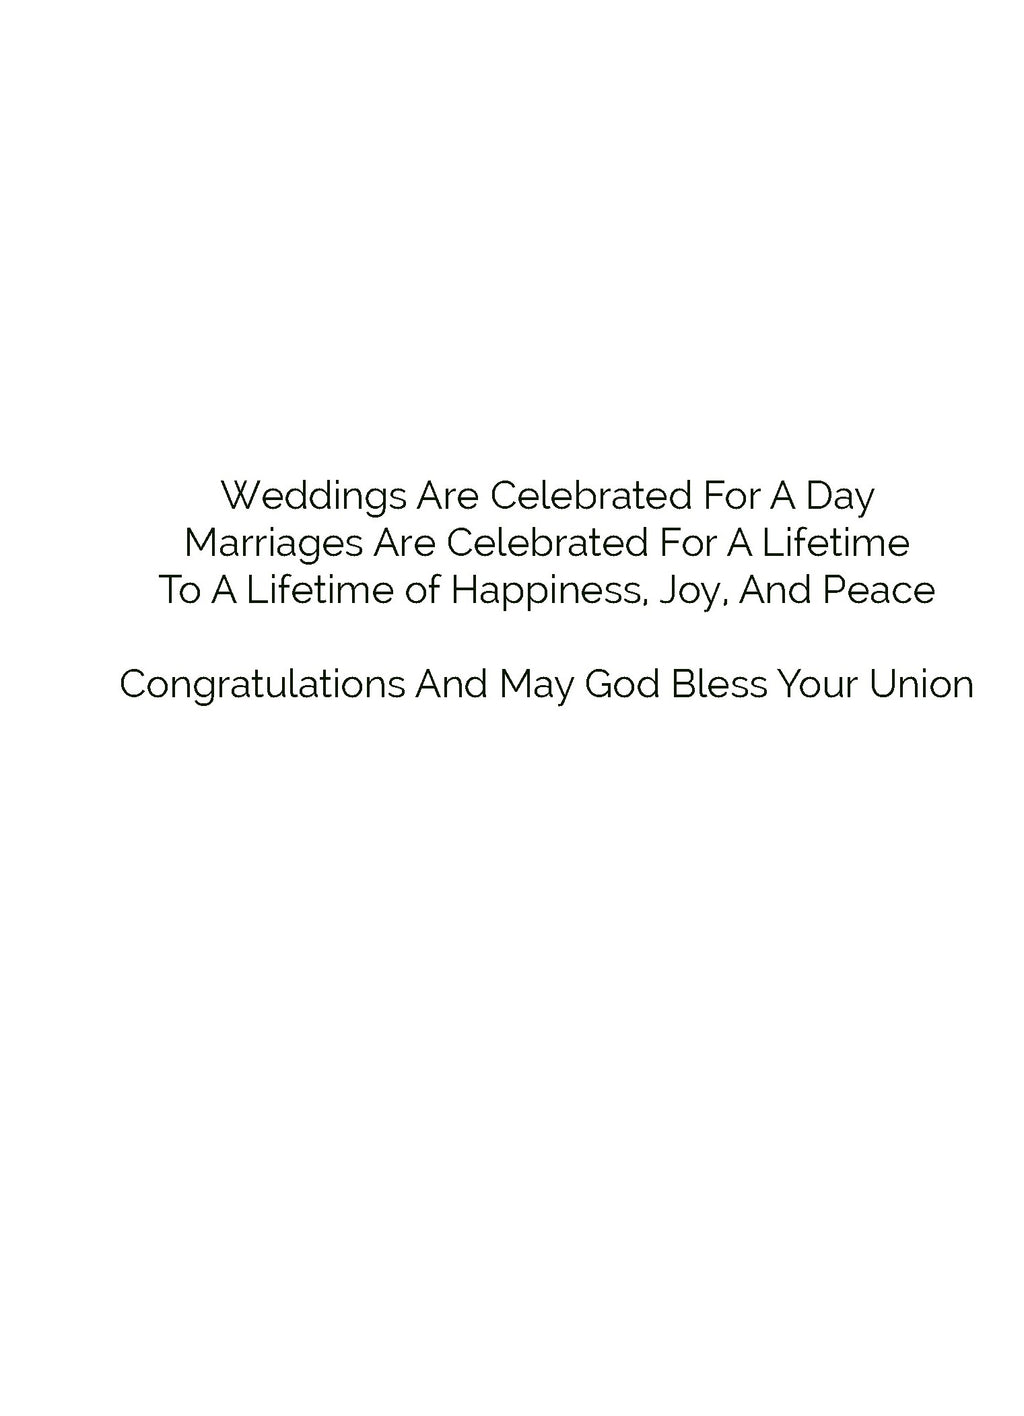 Celebration For Life-Wedding